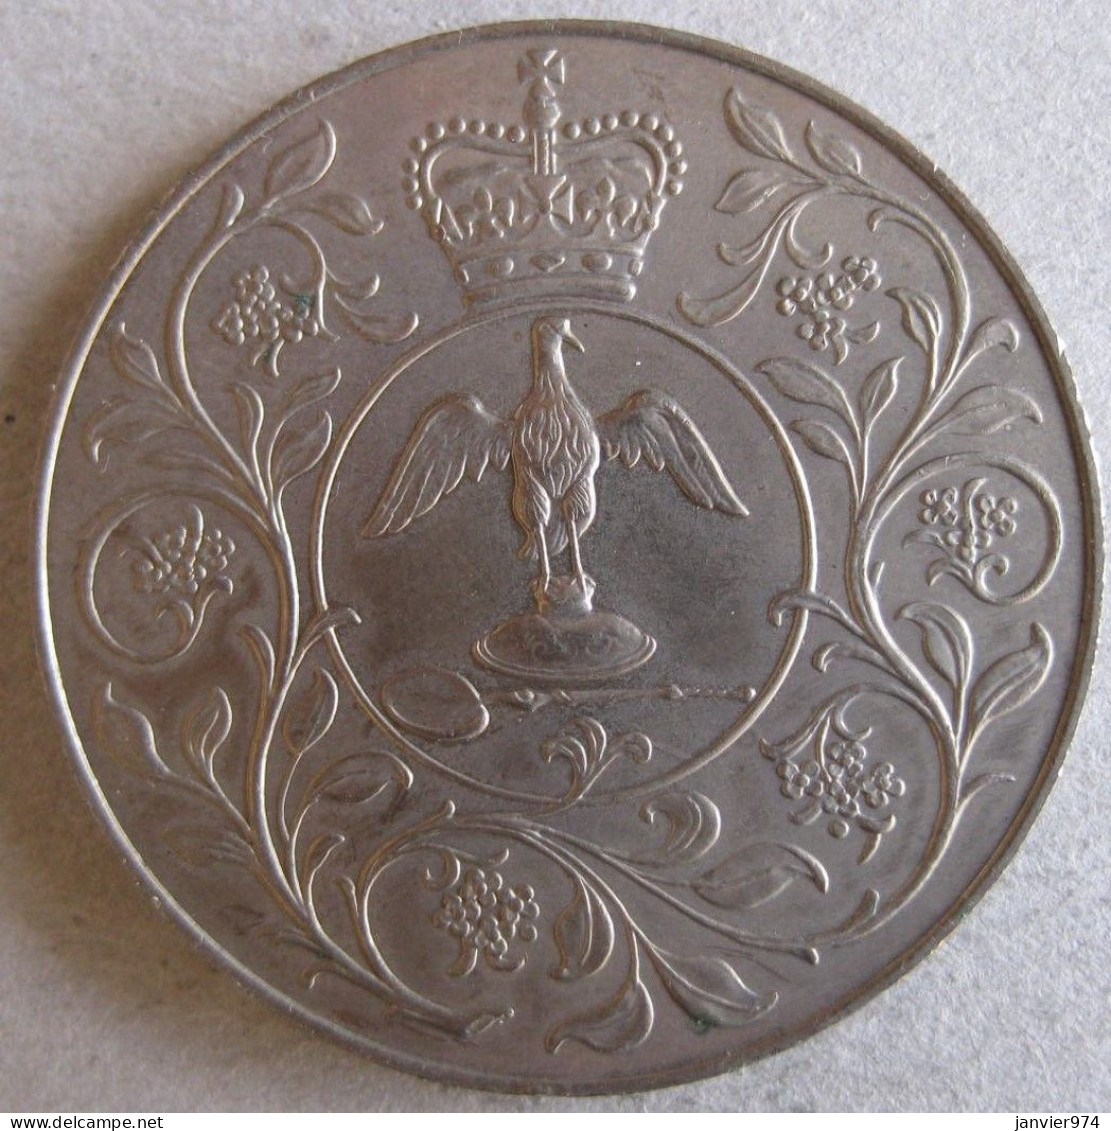 Royaume Unie Médaille Elizabeth II 1977, Pour Son Jubilé D'argent De Règne , En Cupro Nickel. - Adel